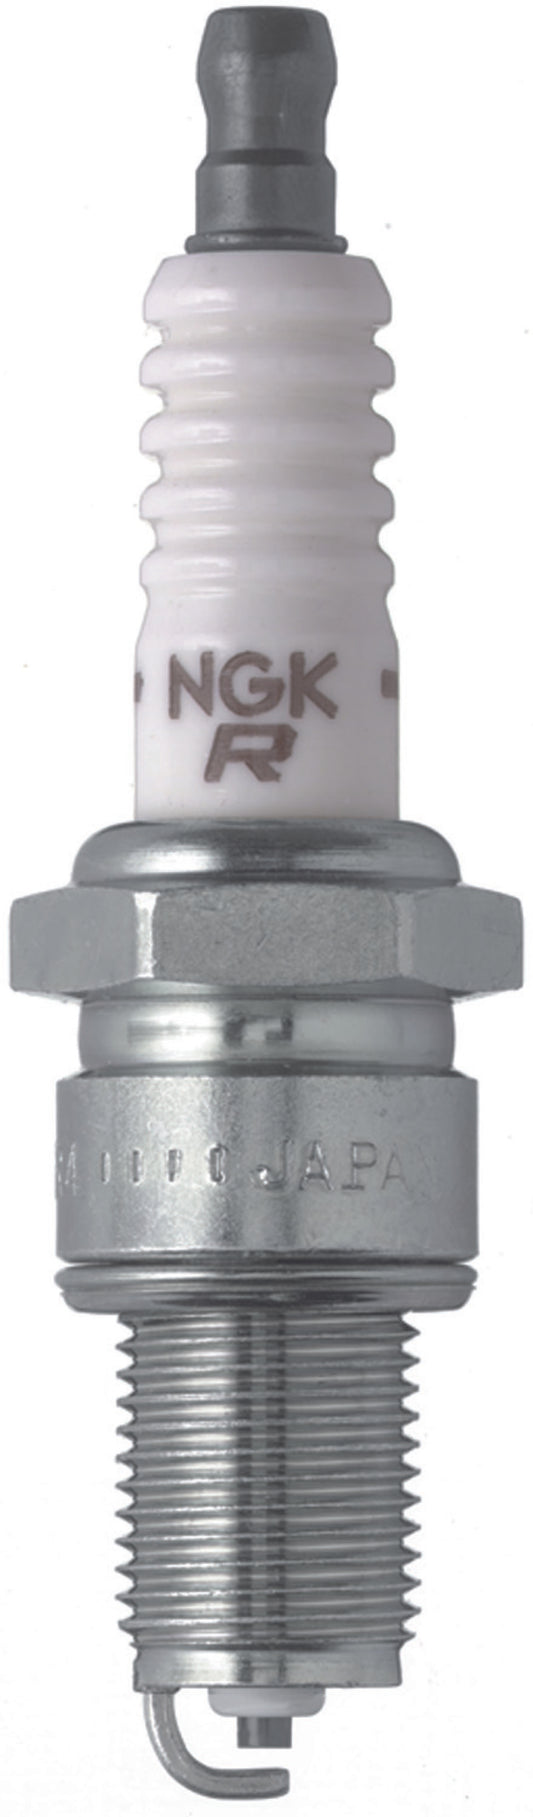 NGK Standard Spark Plug Box of 4 (BPR2ES SOLID)